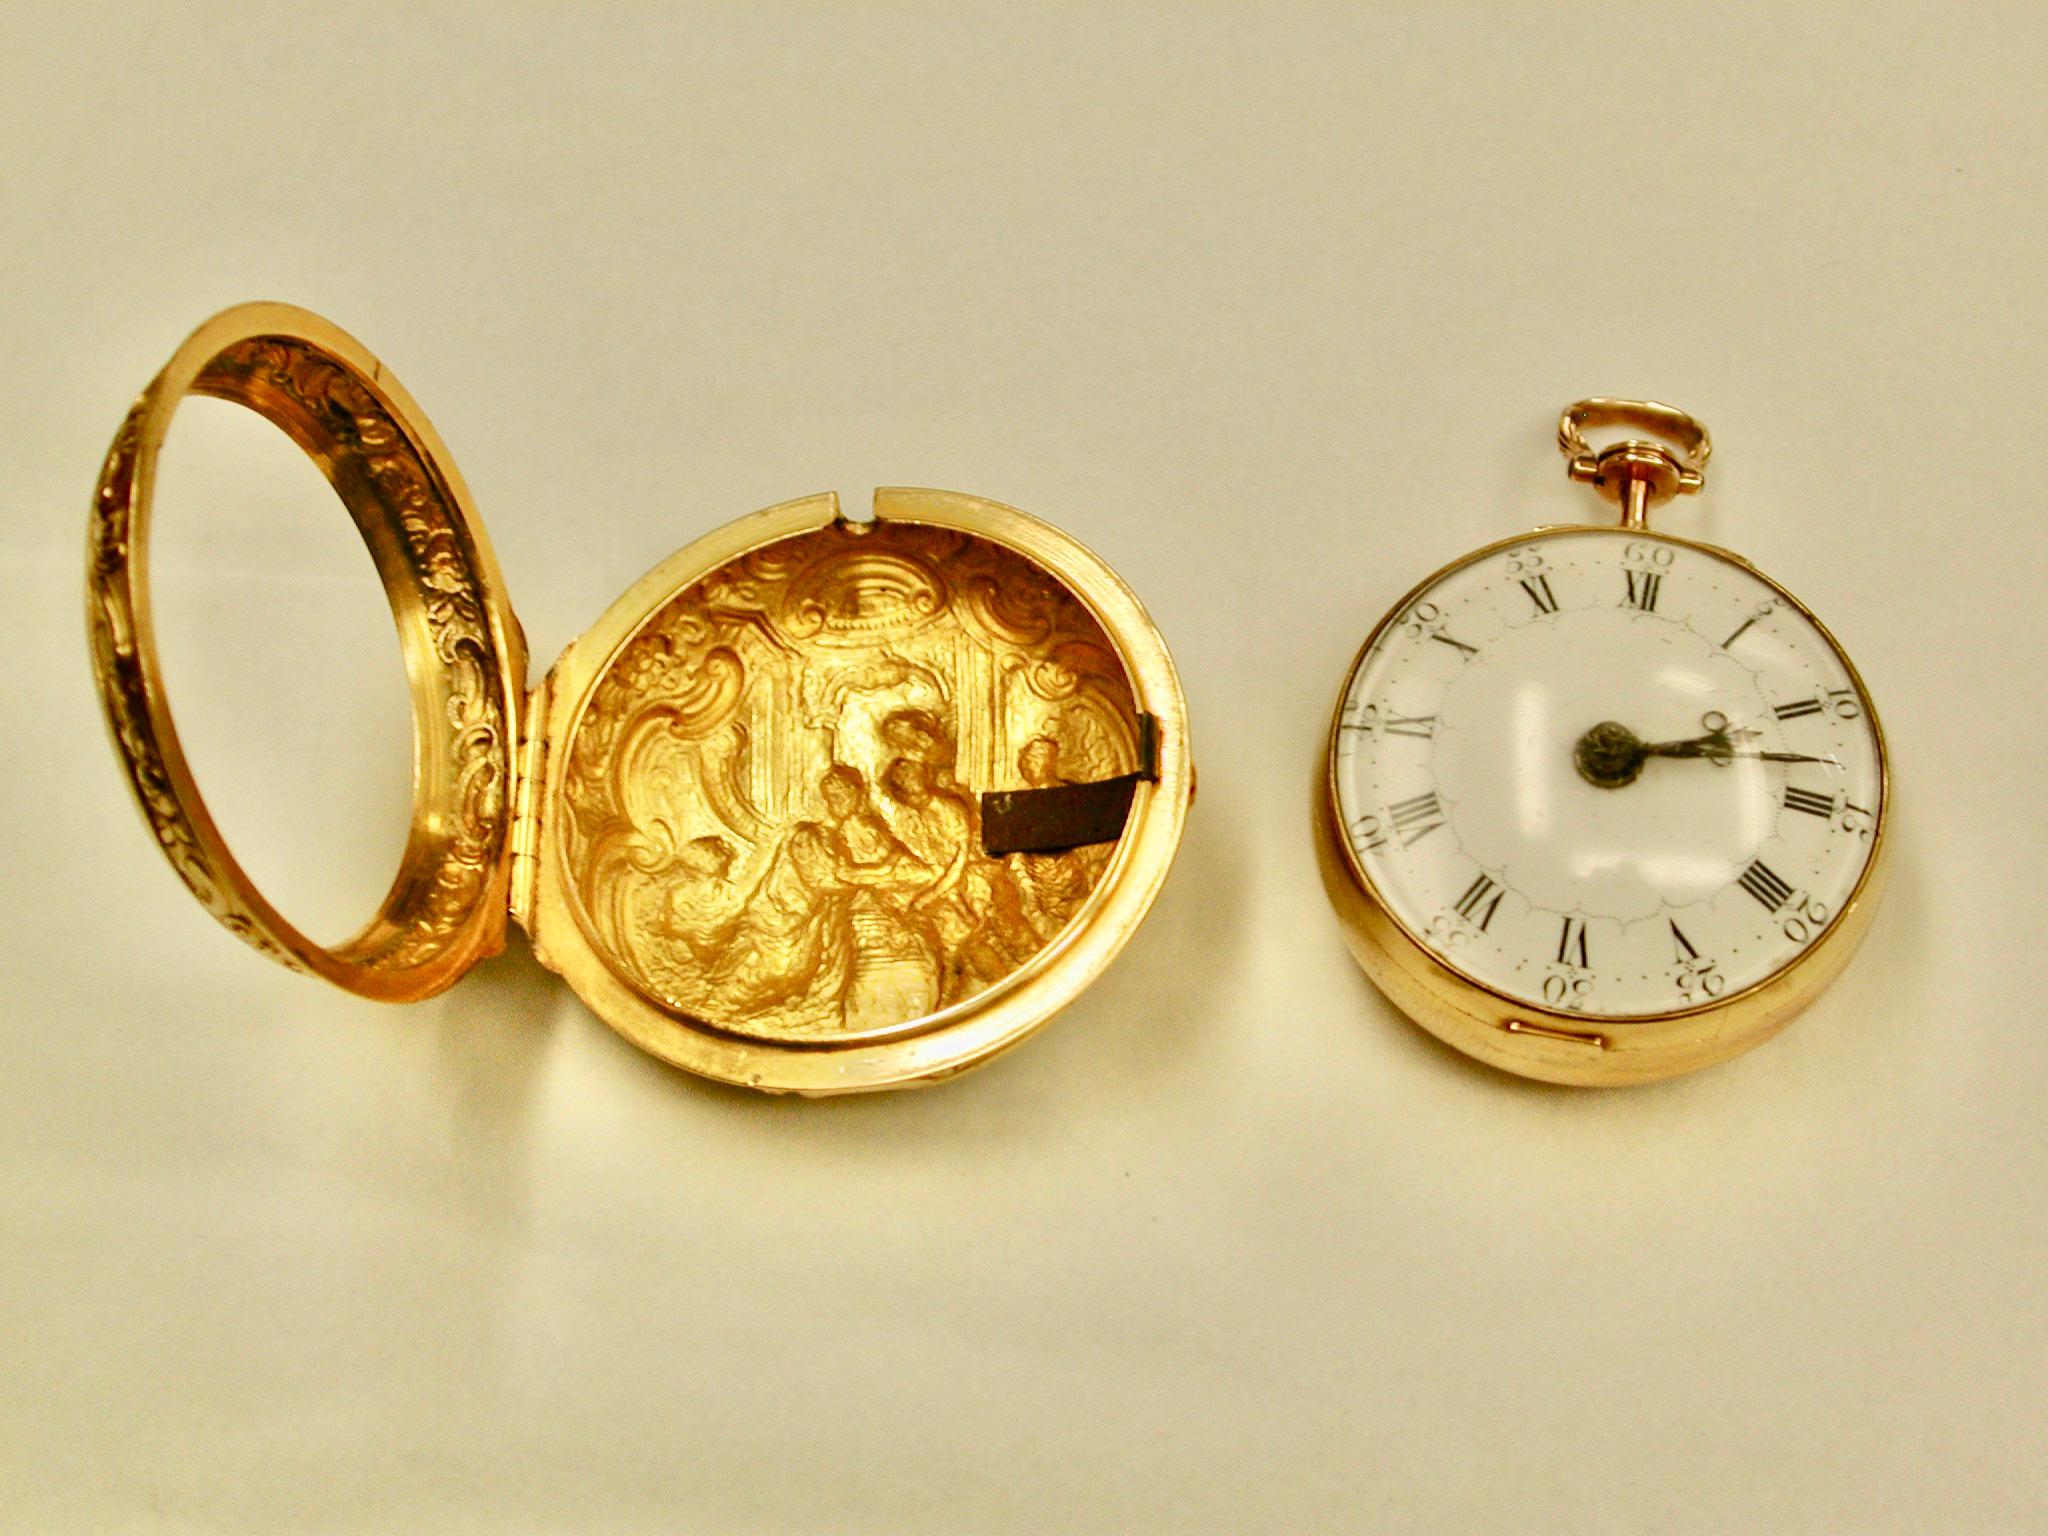 Fabricant de montres de poche Repousee en or 22 carats avec paire, Thomas Rea, 1769
Le mouvement a été fabriqué à Walton-On-Trent par Thomas Rea et le magnifique boîtier à paire a été fabriqué par I+I de Londres.
Cette montre possède un échappement